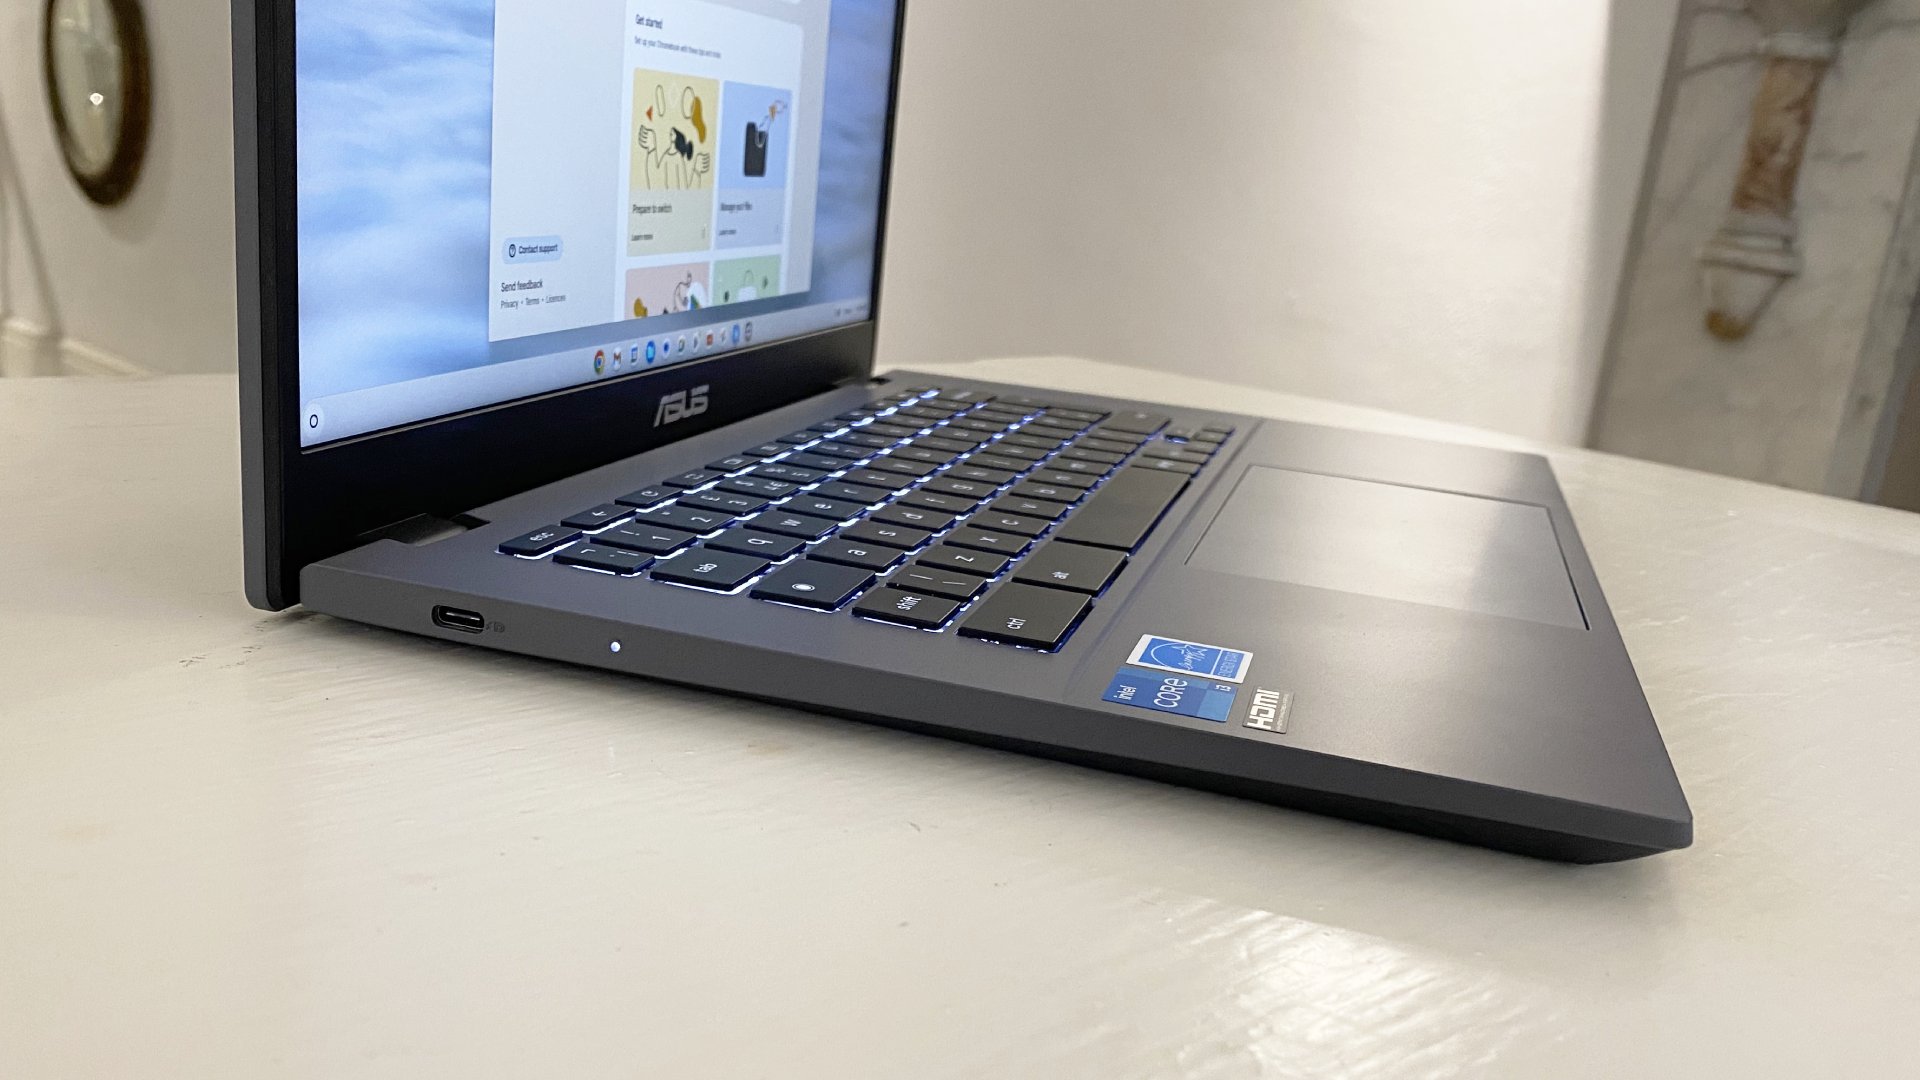 الكمبيوتر المحمول Asus Chromebook Plus مفتوح والشاشة قيد التشغيل ويجلس على المكتب